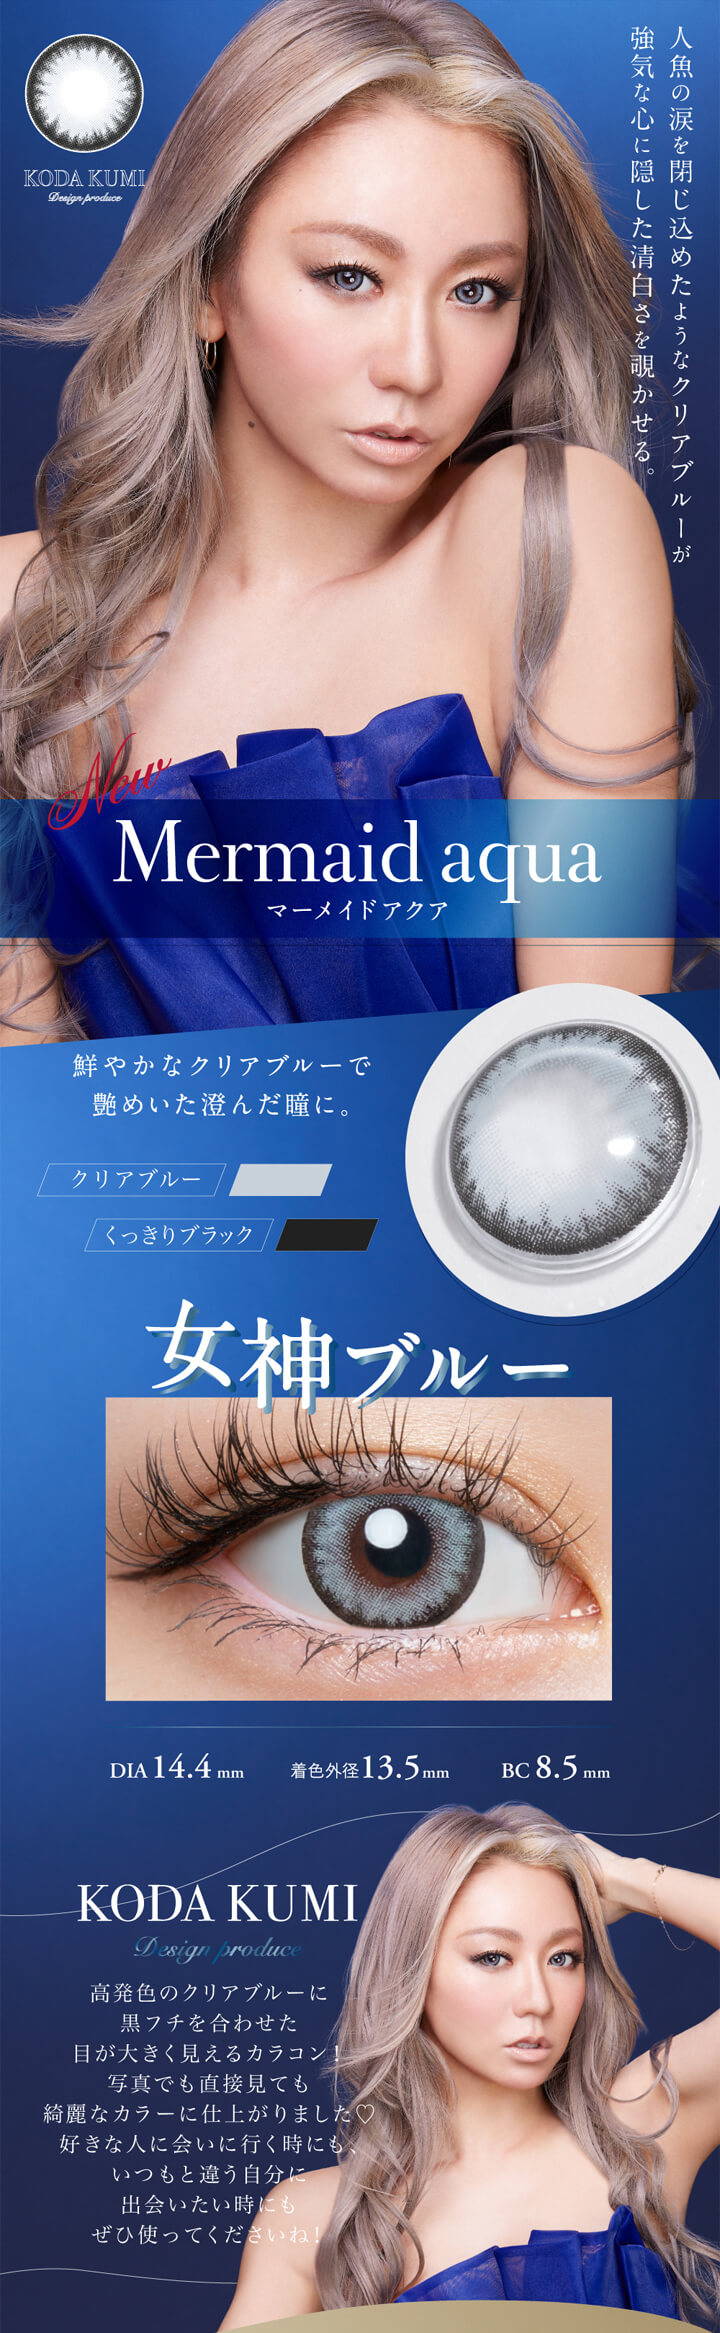 ラヴェール(loveil),人魚の涙を閉じ込めたようなクリアブルーが、強気な心に隠した清白さを覗かせる。,マーメイドアクア,Mermaid aqua,鮮やかなクリアブルーで、艶めいた澄んだ瞳に。,クリアブルー,くっきりブラック,女神ブルー,DIA 14.4mm,着色外径 13.5mm,BC 8.5mm,KODA KUMI Design produce,高発色のクリアブルーに黒フチを合わせた、目が大きく見えるカラコン!,写真でも直接見ても綺麗なカラーに仕上がりました♡,好きな人に会いに行く時にも、いつもと違う自分に出会いたい時にも、ぜひ使ってくださいね!|ラヴェール loveil ワンデー カラコン カラーコンタクト